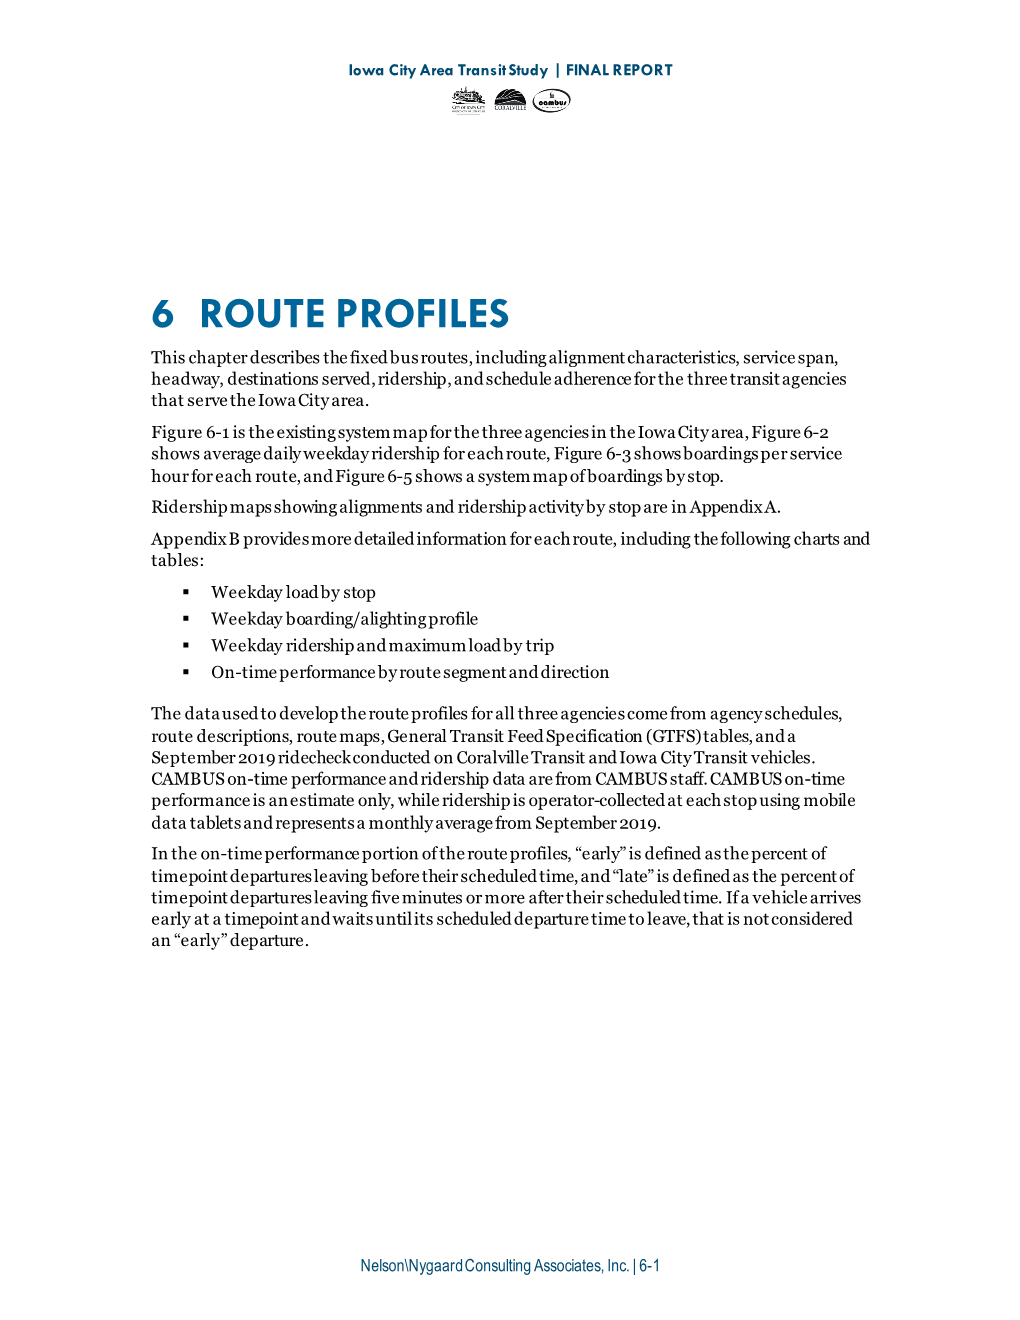 06: Route Profiles